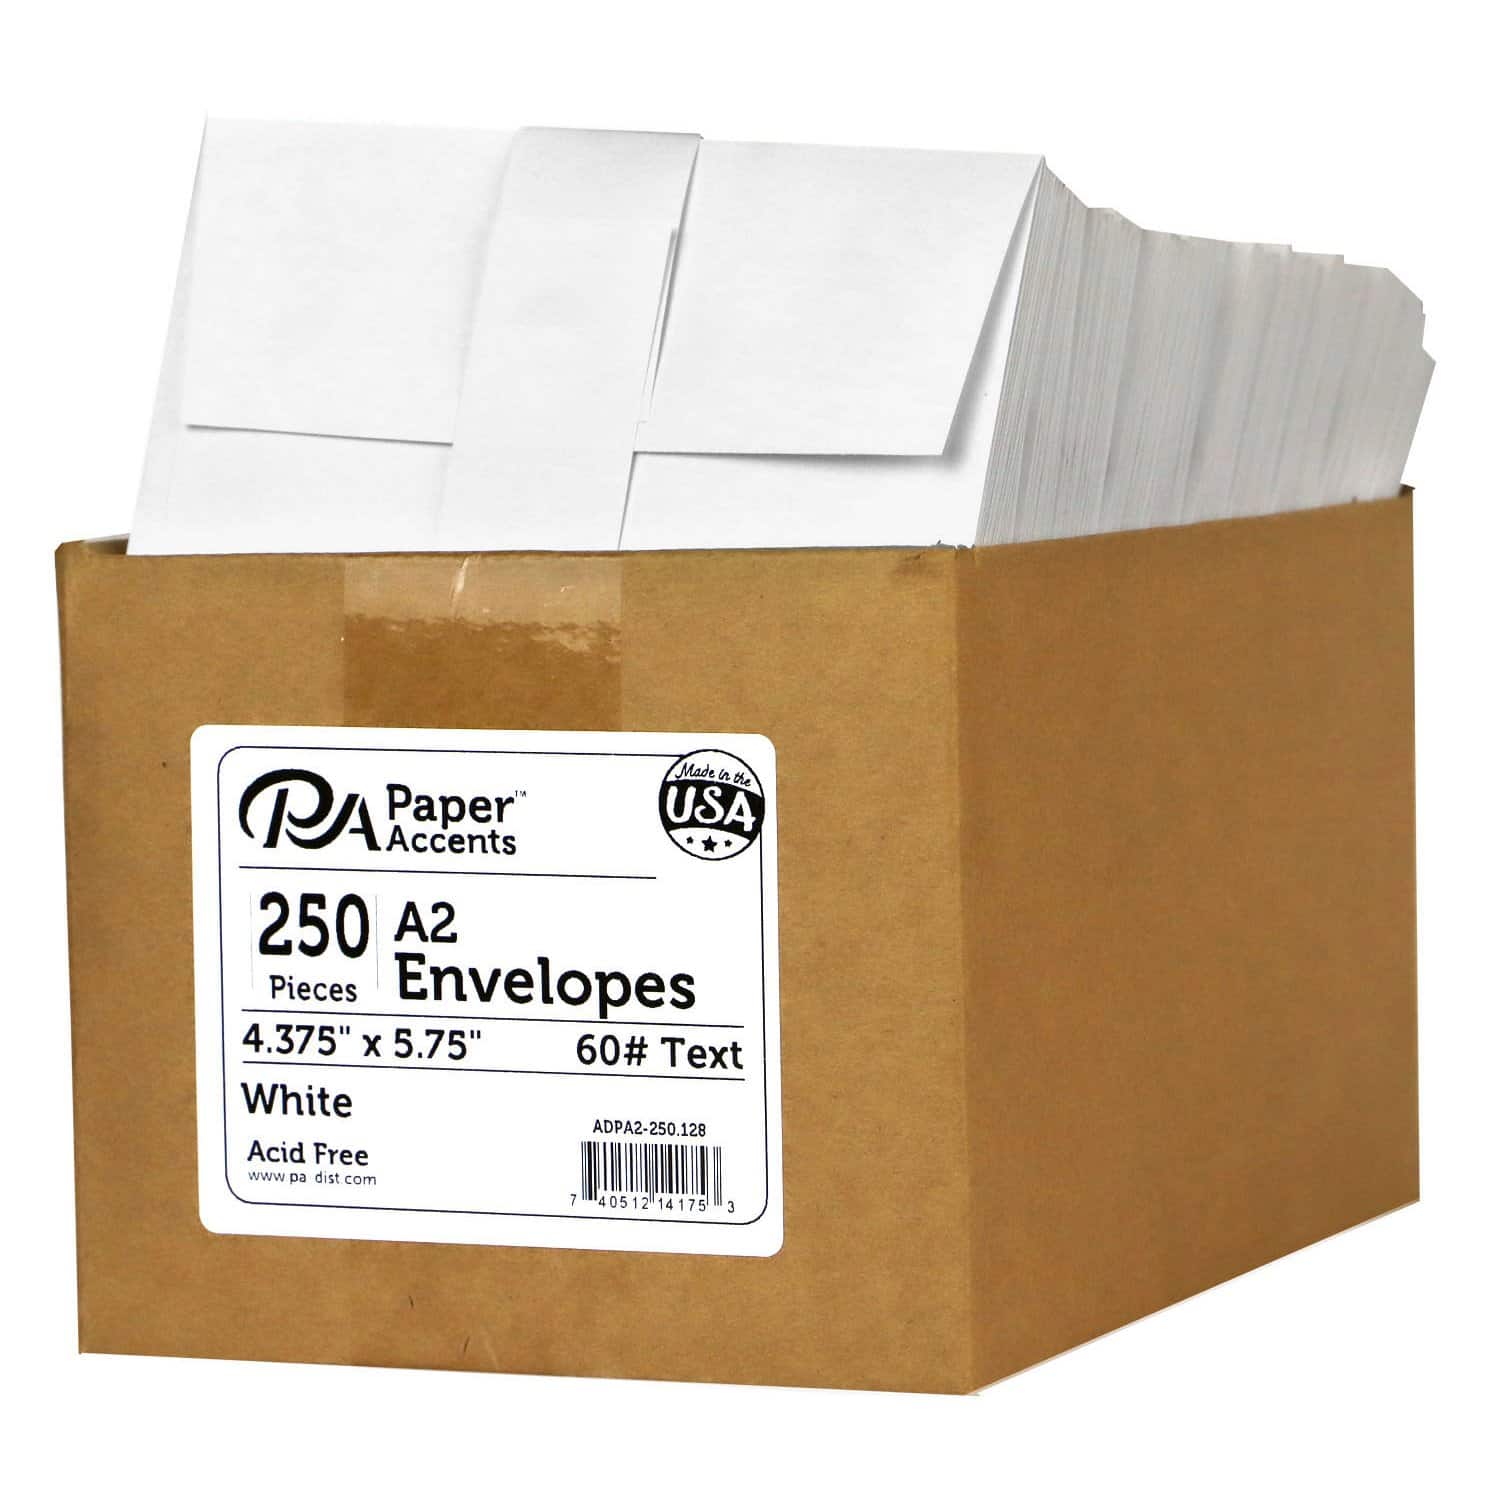 PA Paper&#x2122; Accents Super Value Pack Envelopes, 4.38&#x22; x 5.75&#x22;